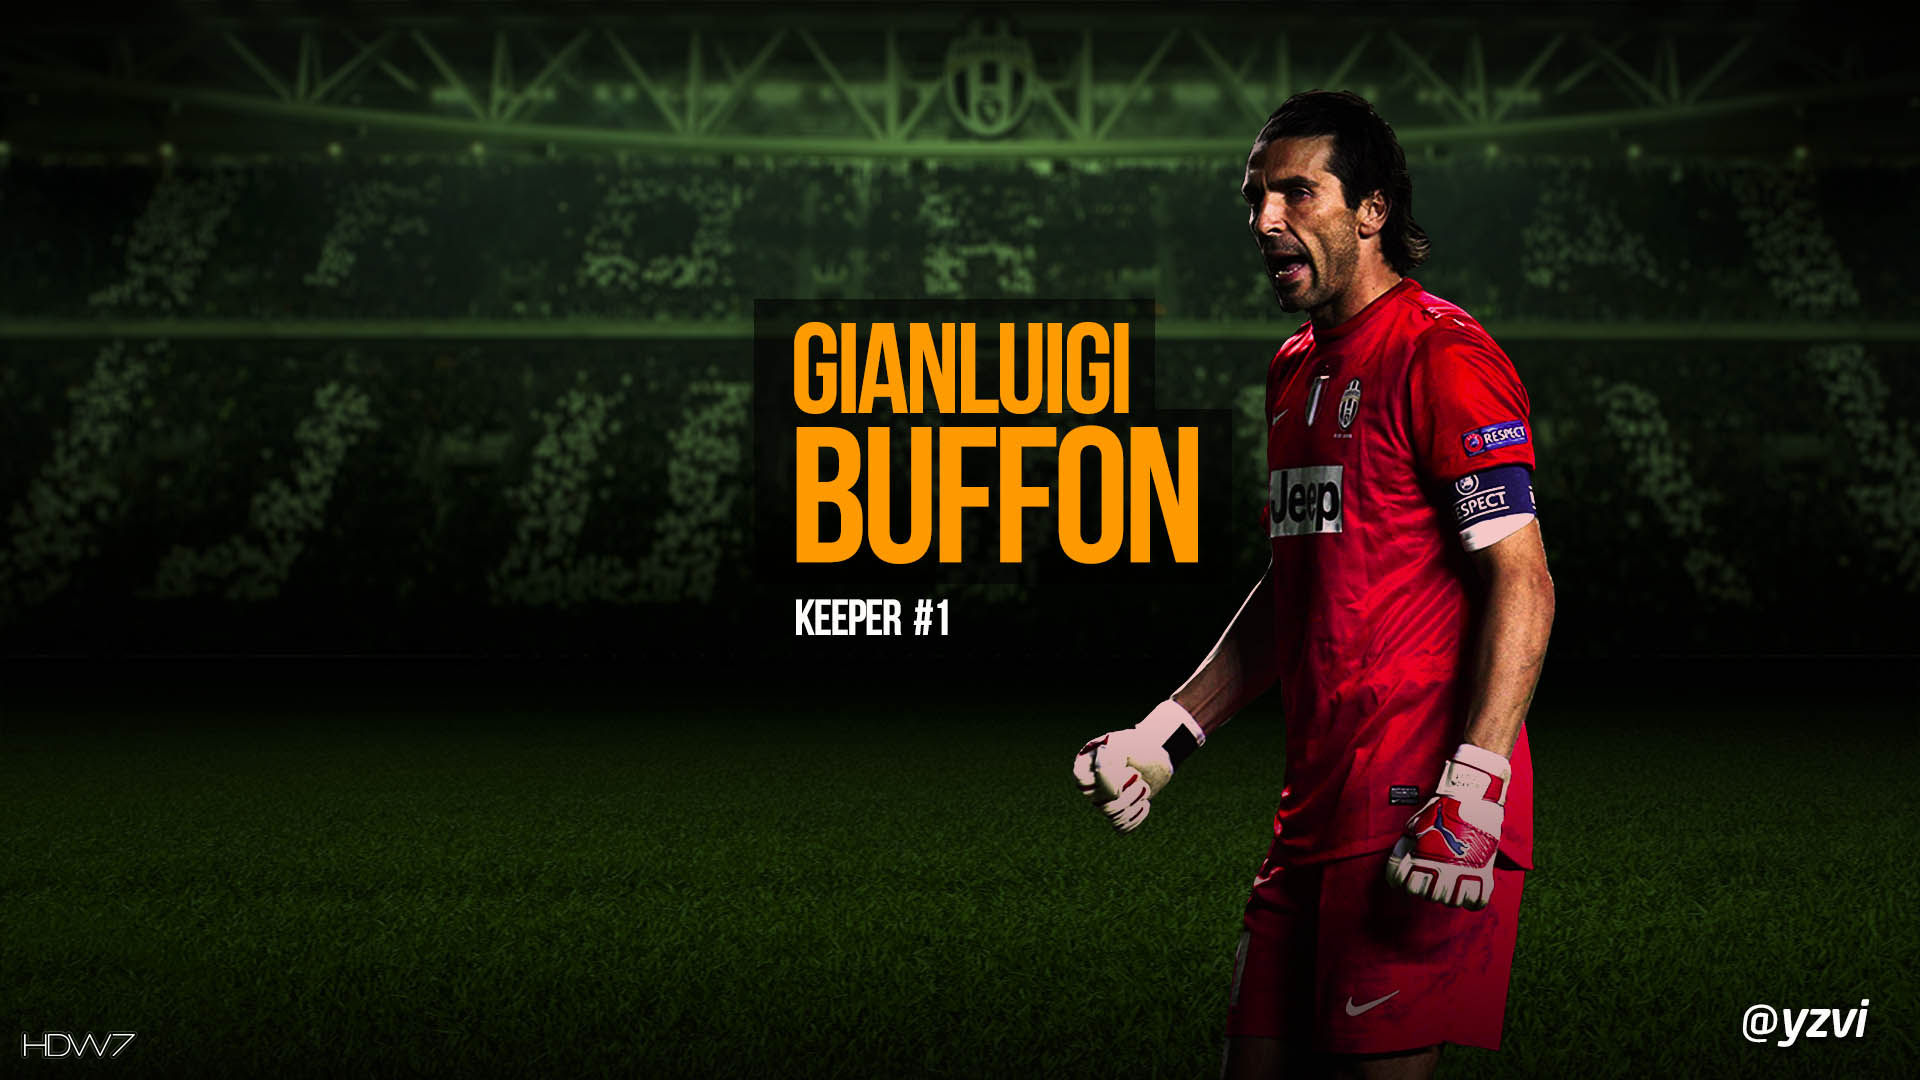 Gianluigi Buffon Juventus Fc - Gianluigi Buffon Name - HD Wallpaper 